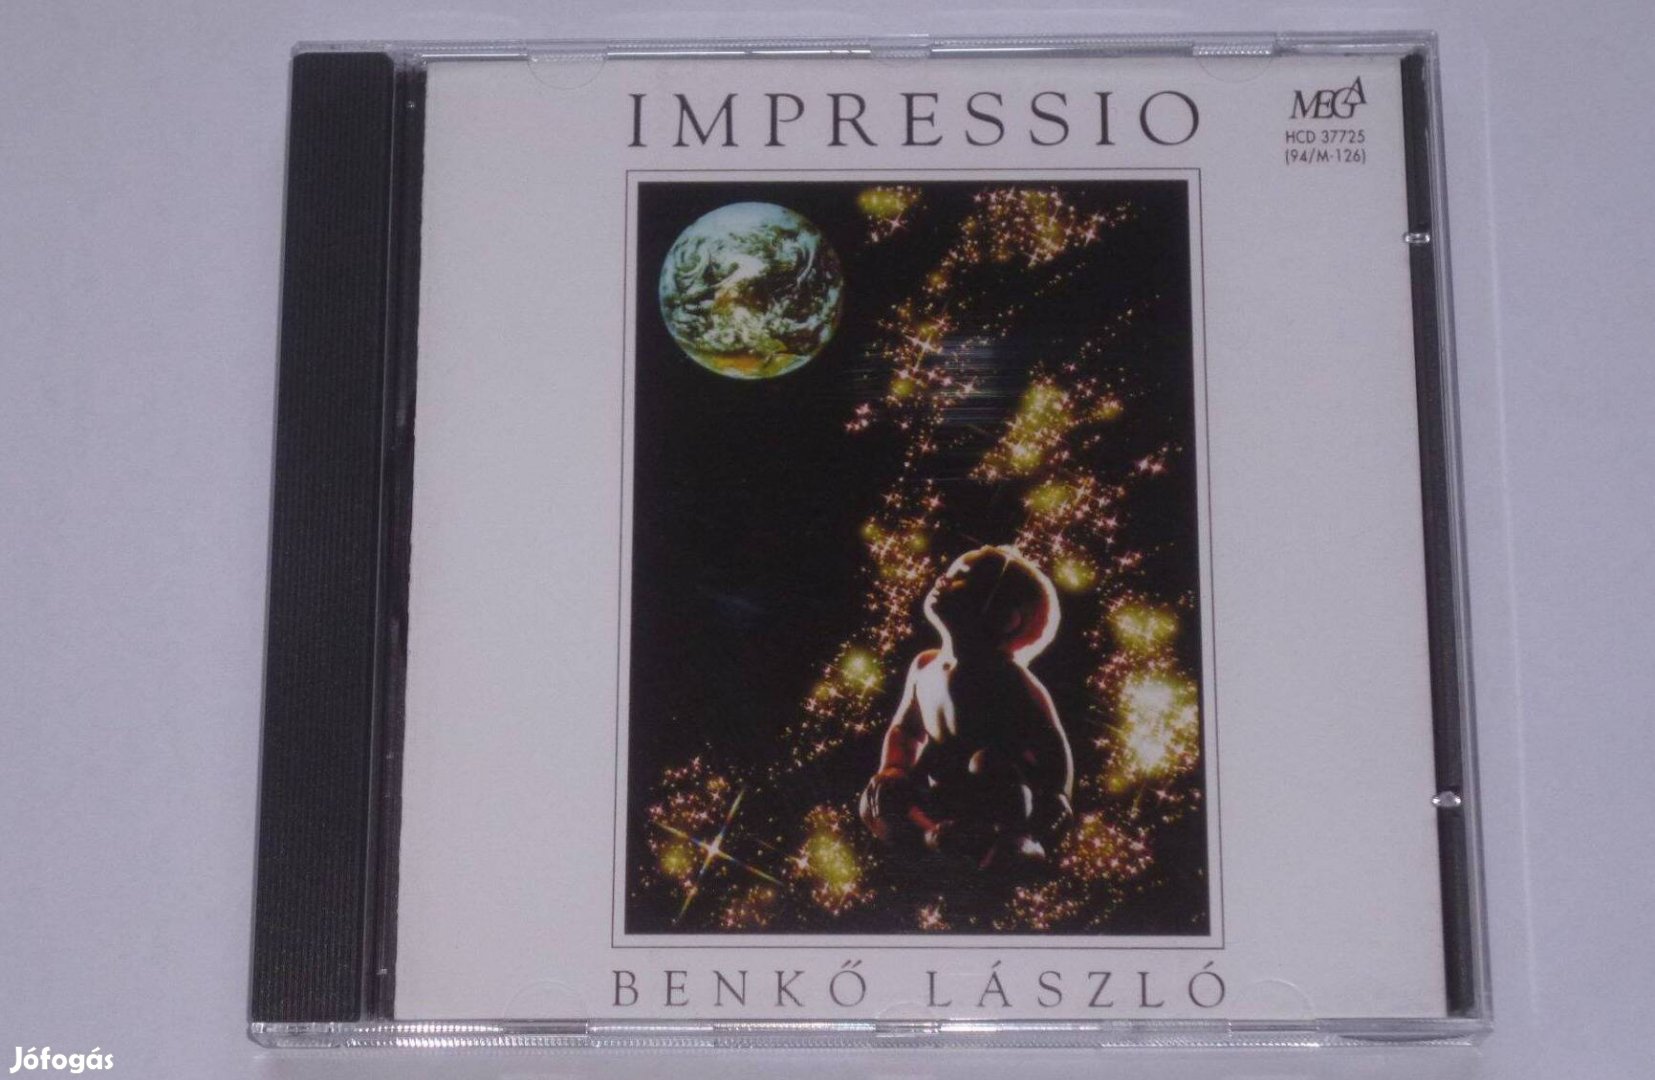 Benkő László - Impressio CD ( Omega )